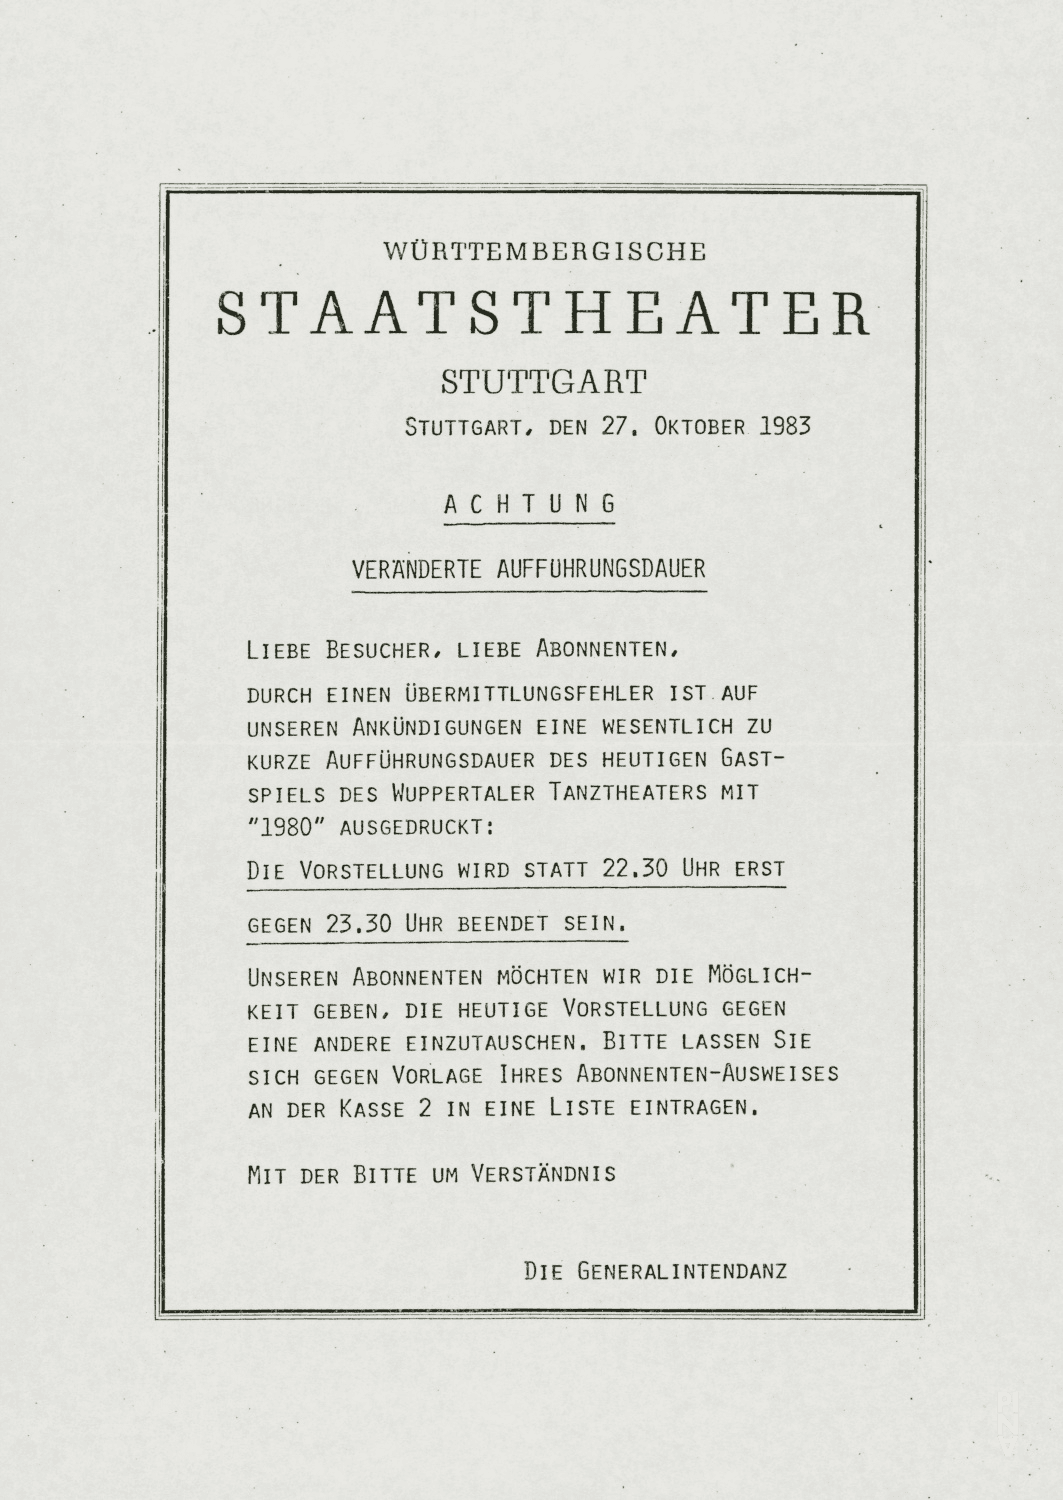 Ankündigung zu „1980 – Ein Stück von Pina Bausch“ von Pina Bausch mit Tanztheater Wuppertal in Stuttgart, 27. Oktober 1983